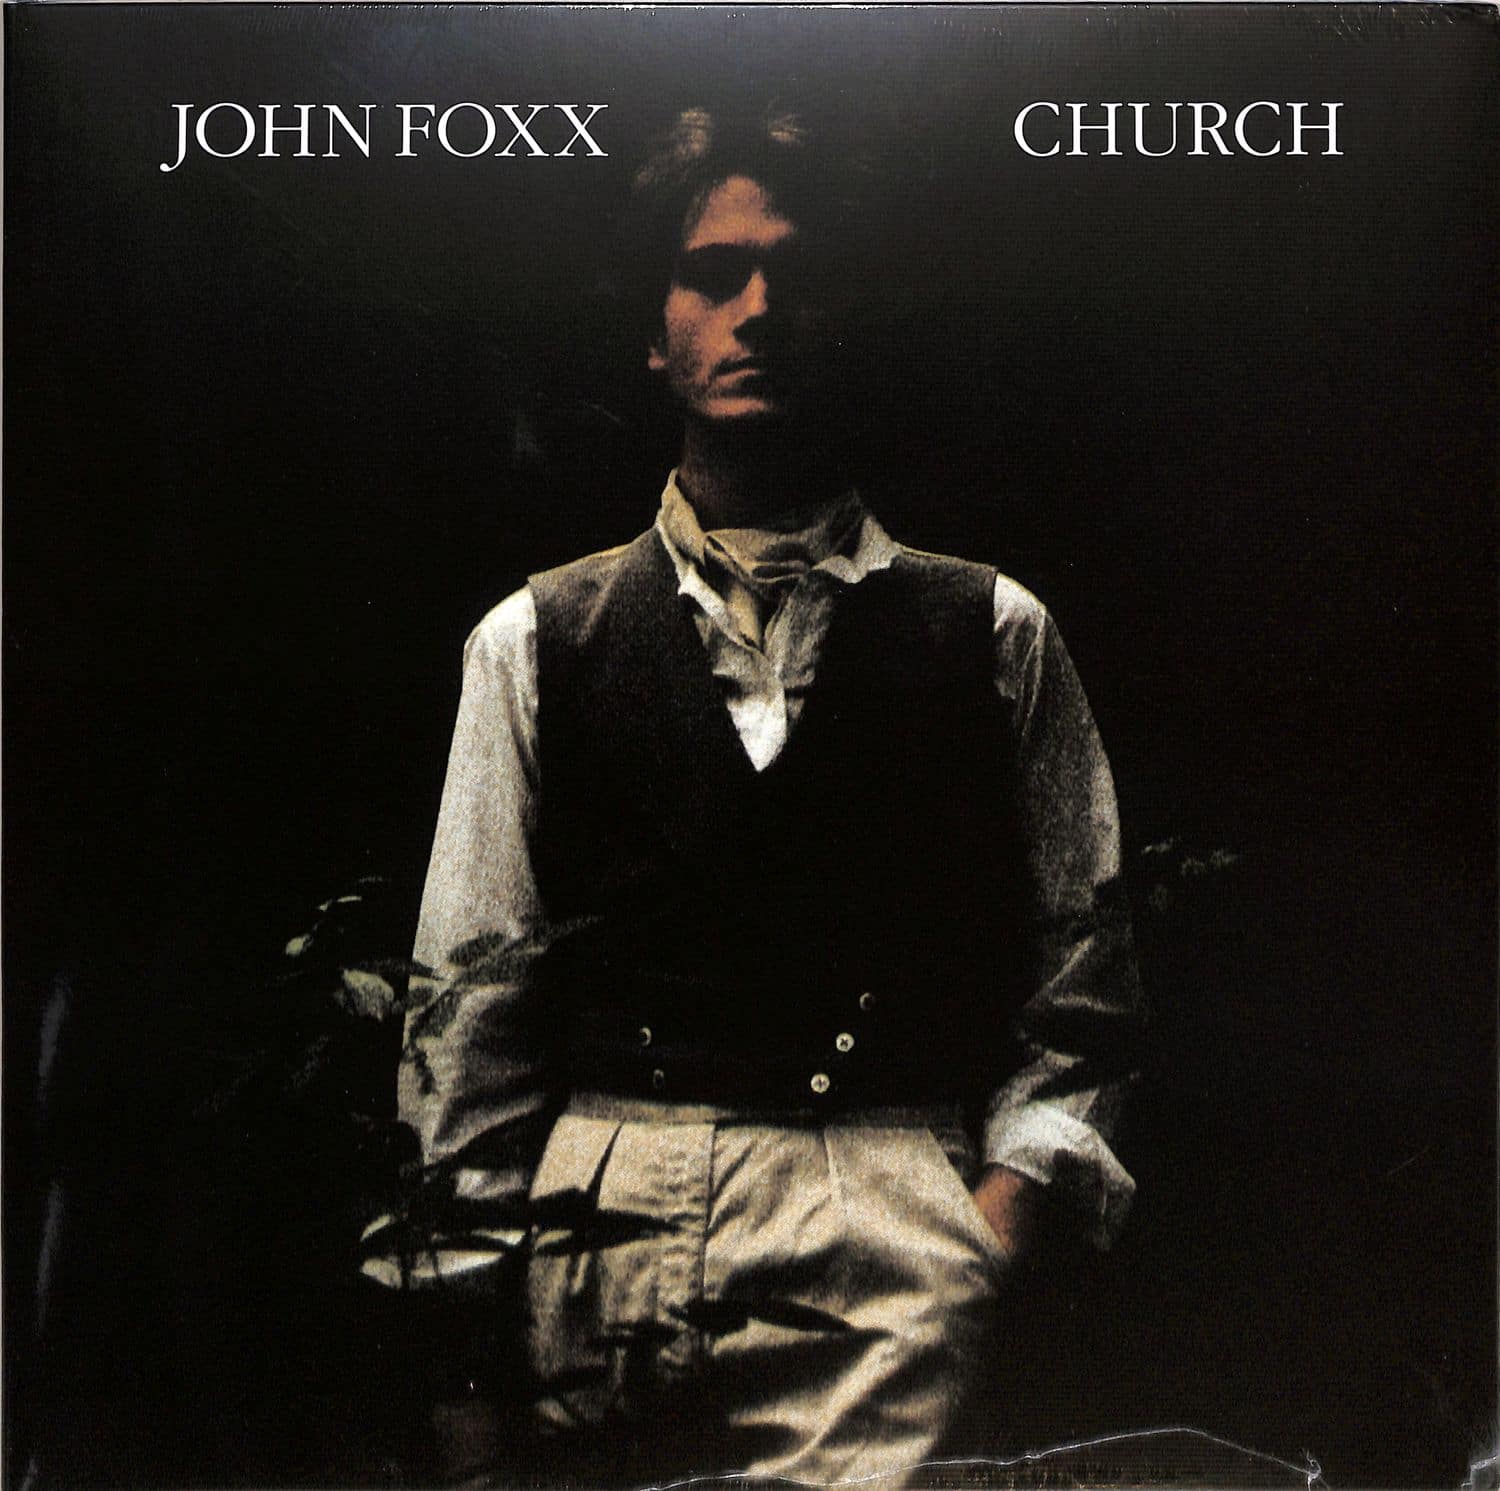 John Foxx - CHURCH 